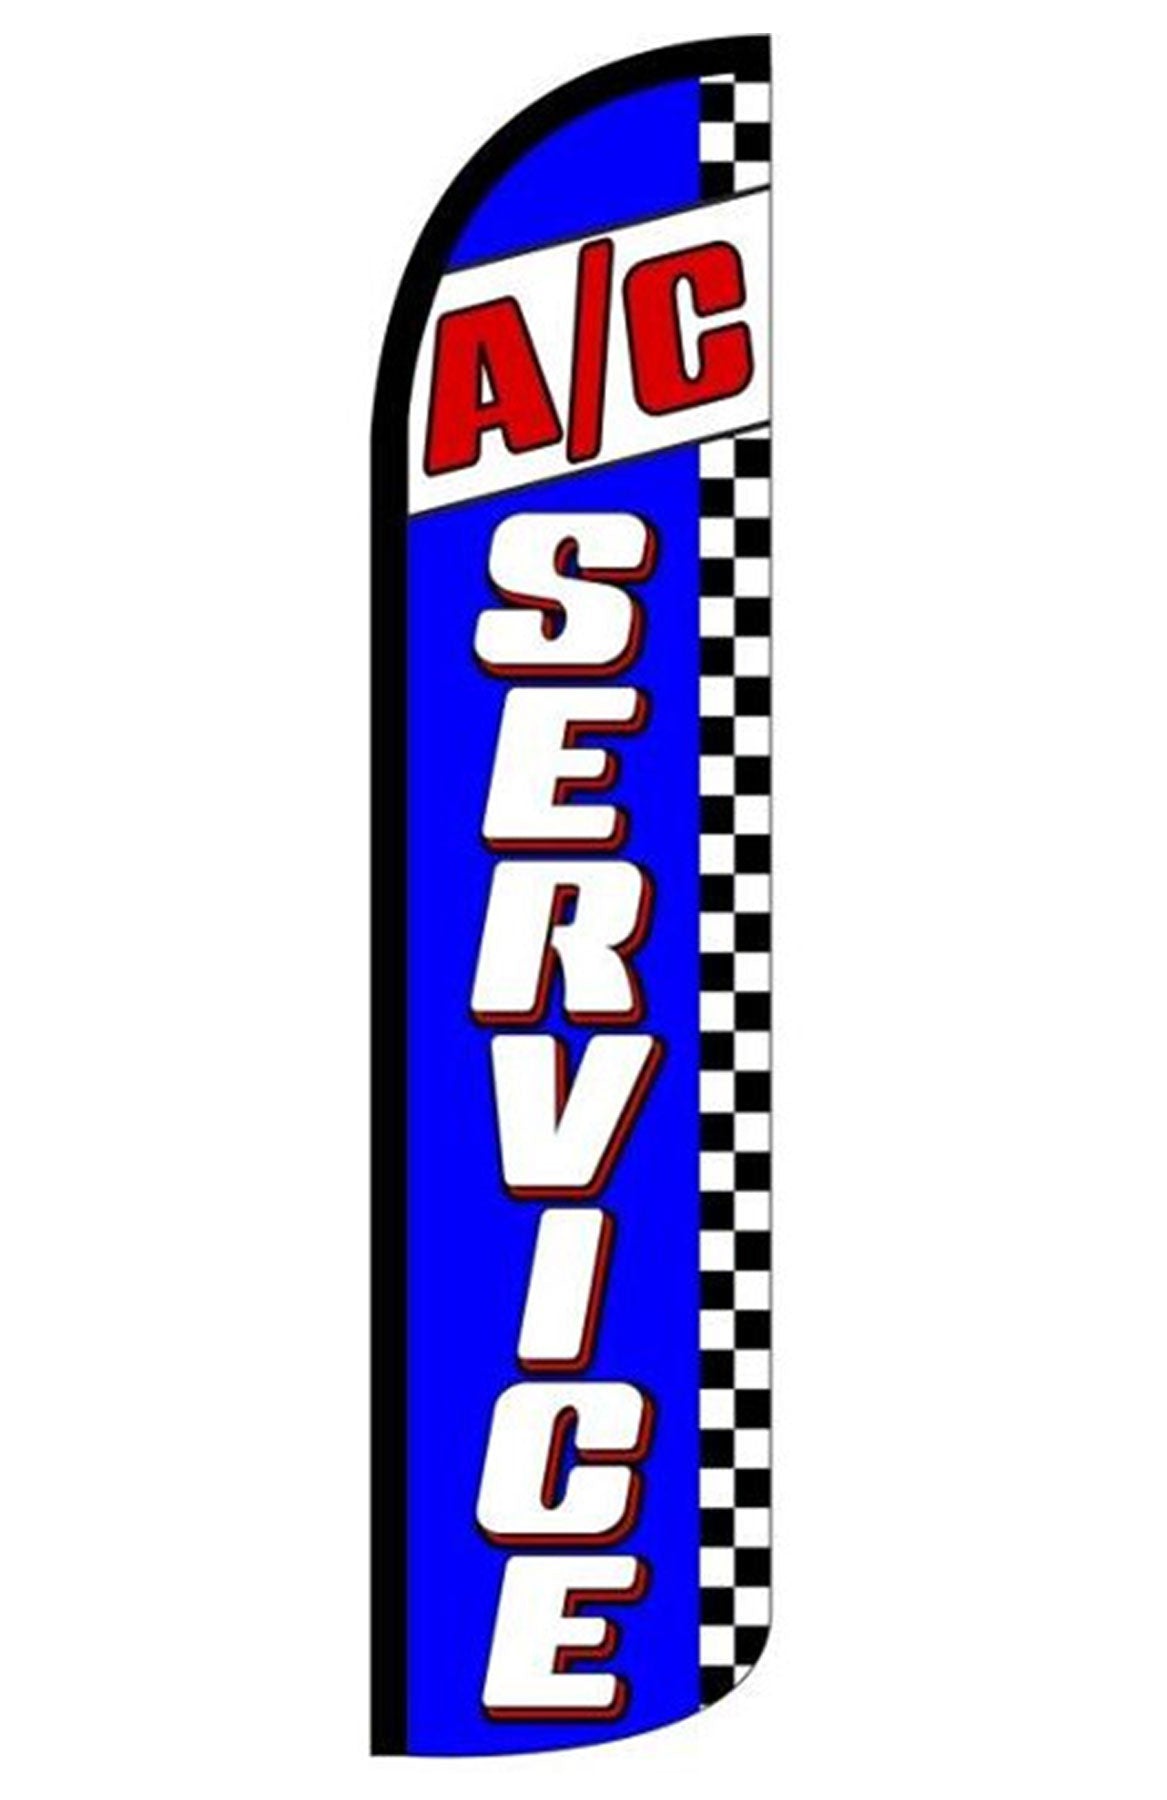 A/C SERVICES (BLUE)